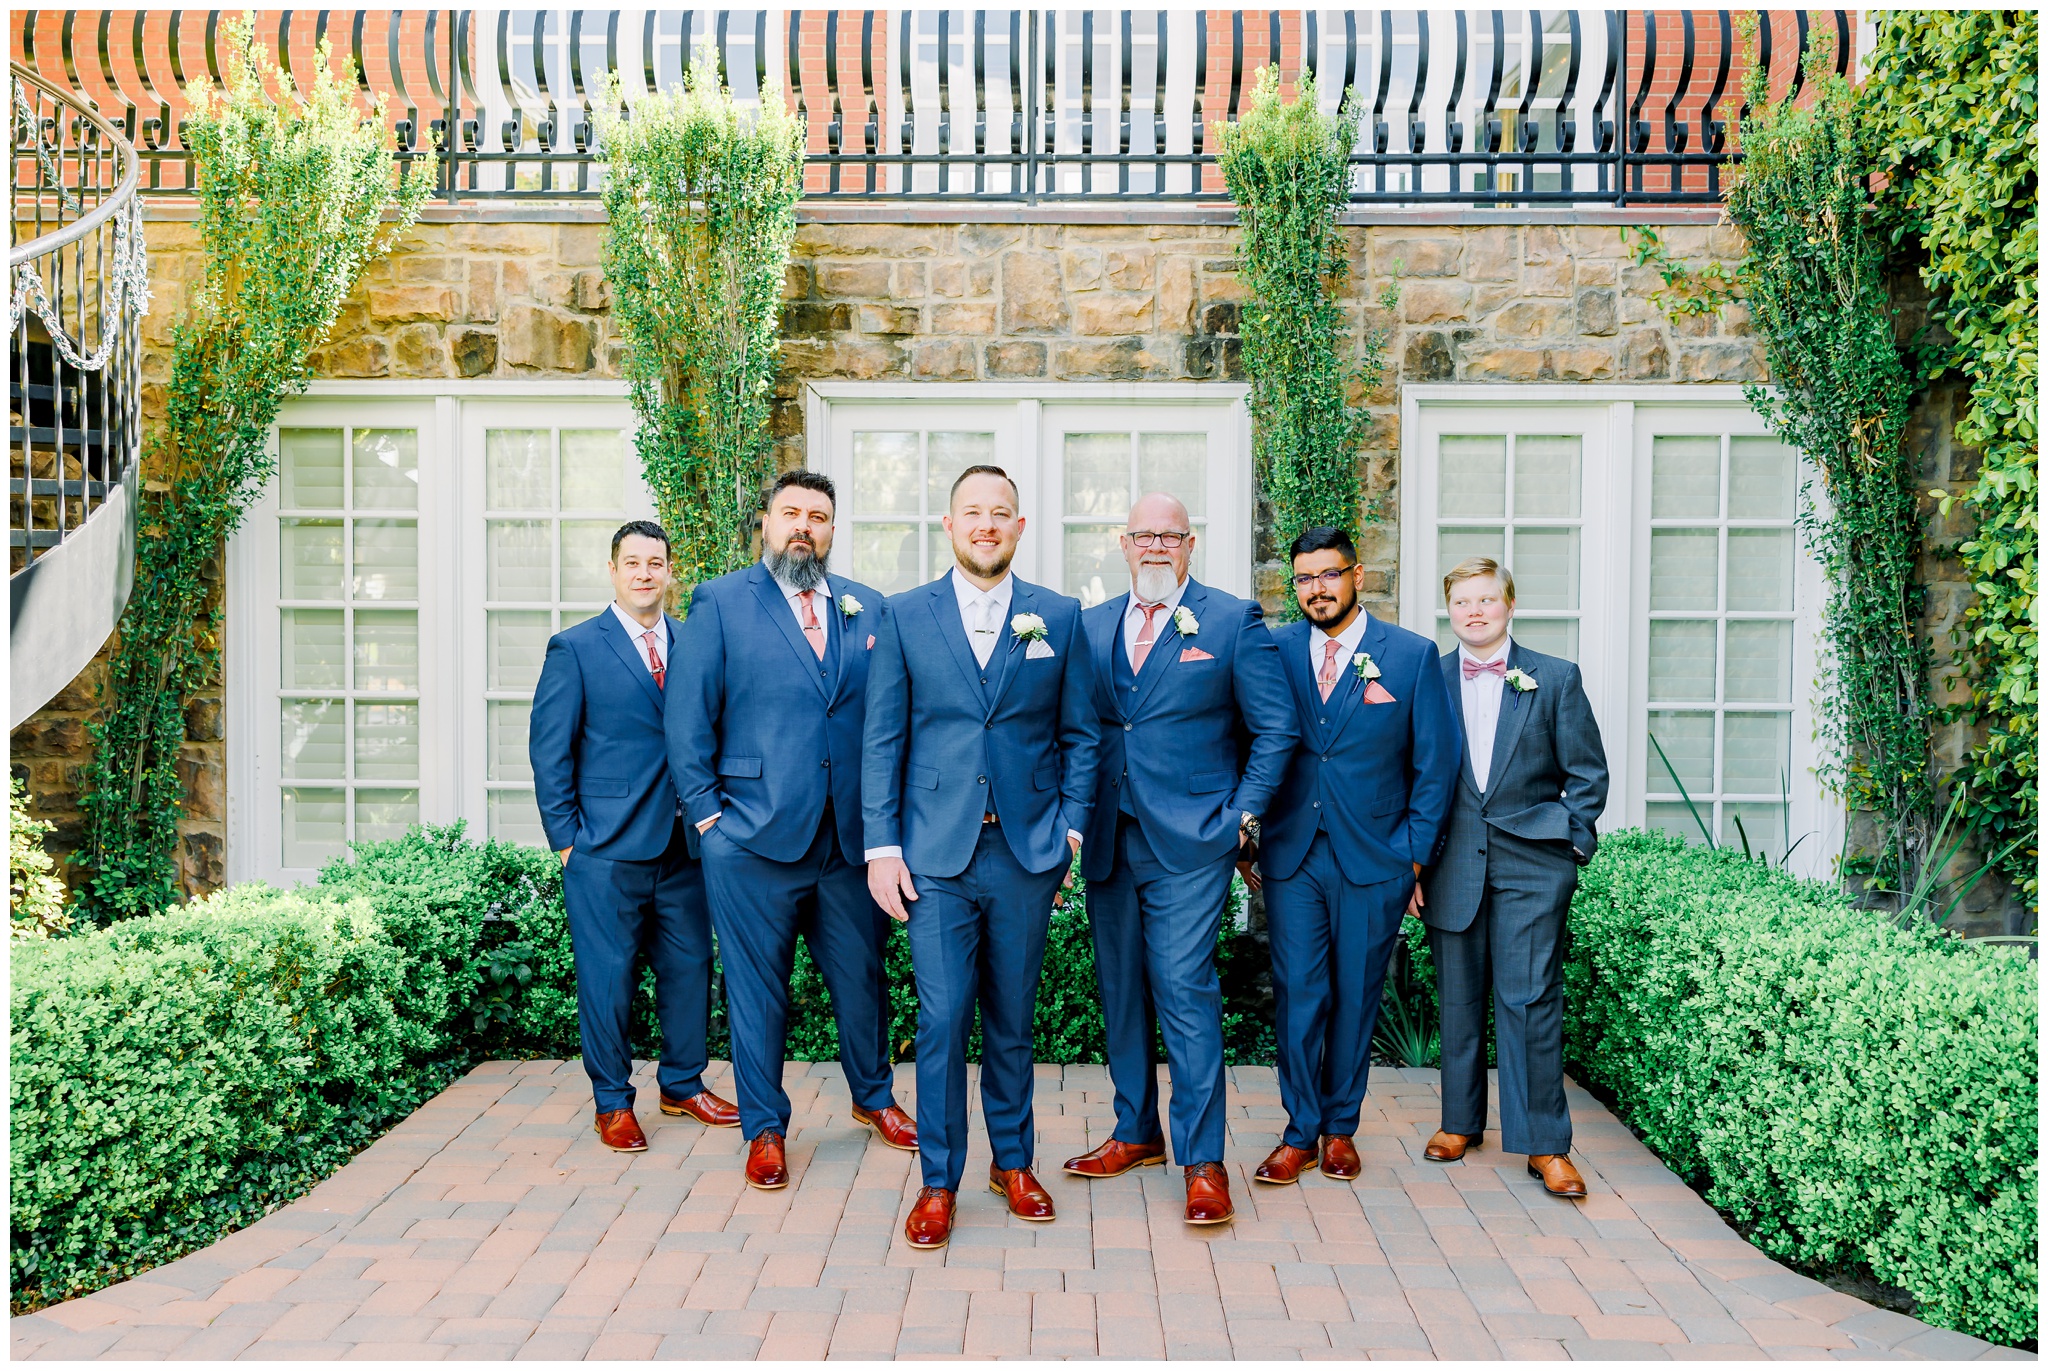 Groom with groomsmen in navy suits